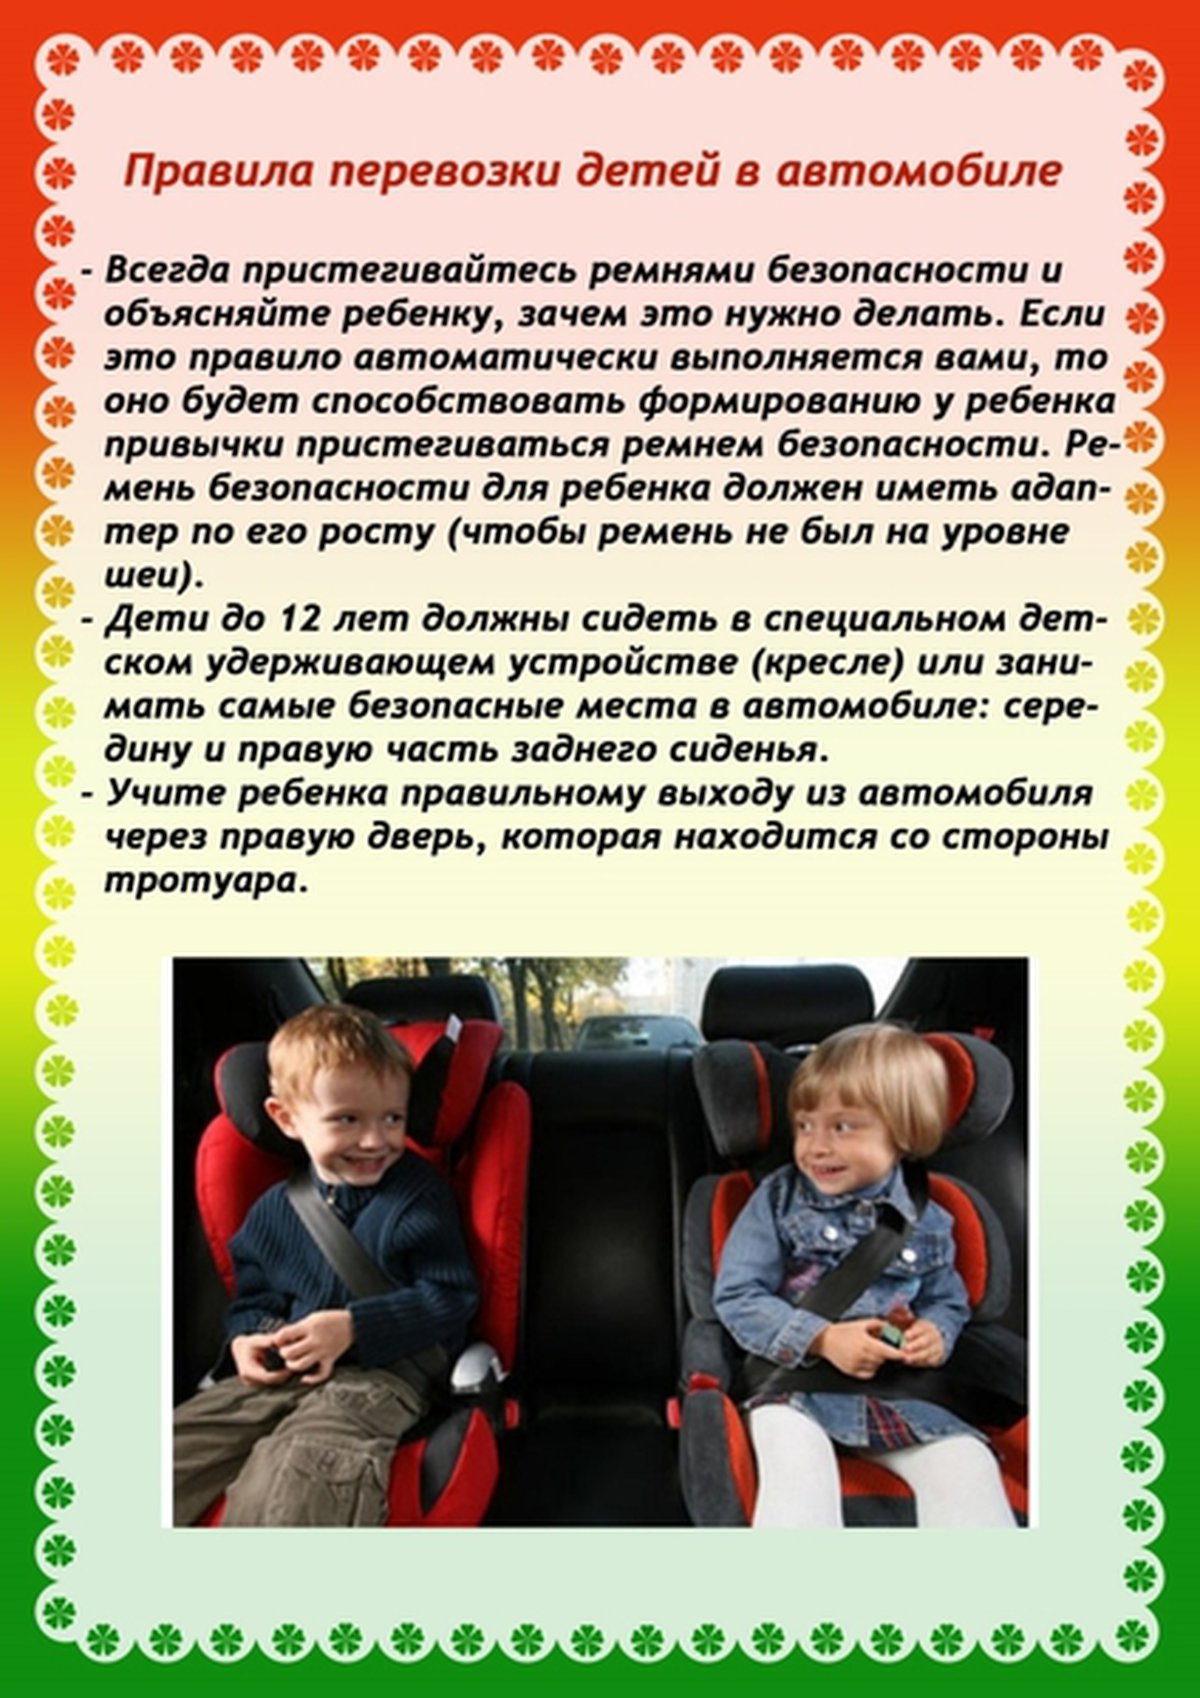 детское кресло информация для родителей